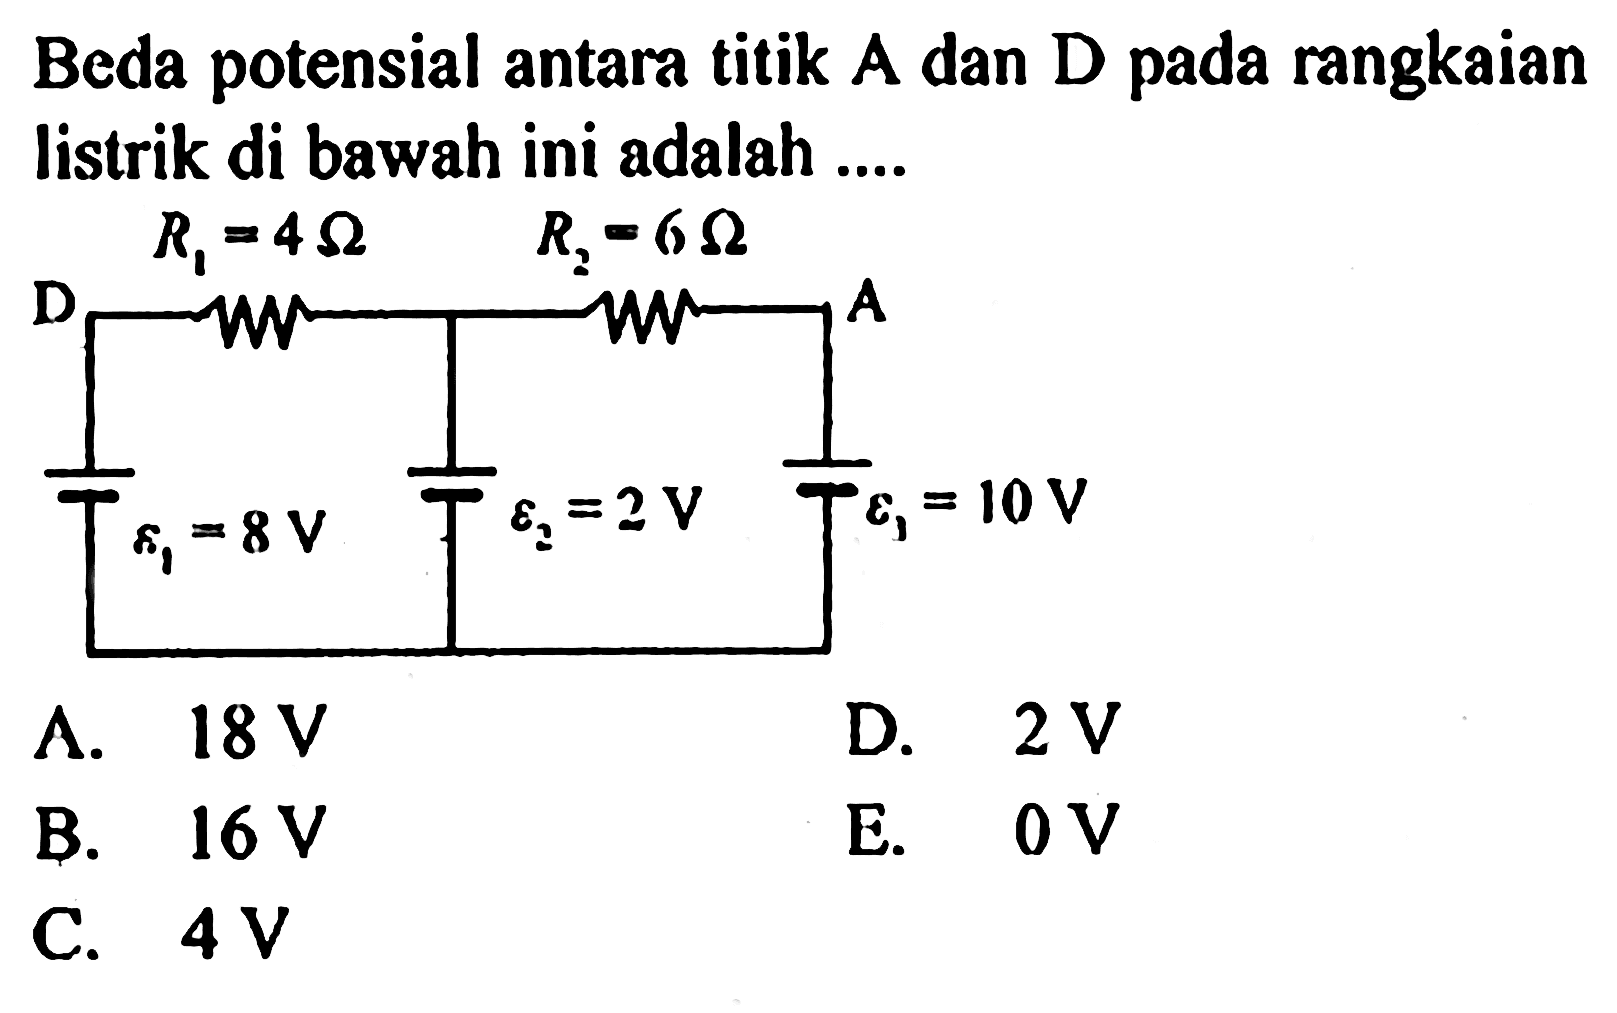 Beda potensial antara titik A dan D pada rangkaian listrik di bawah ini adalah ....